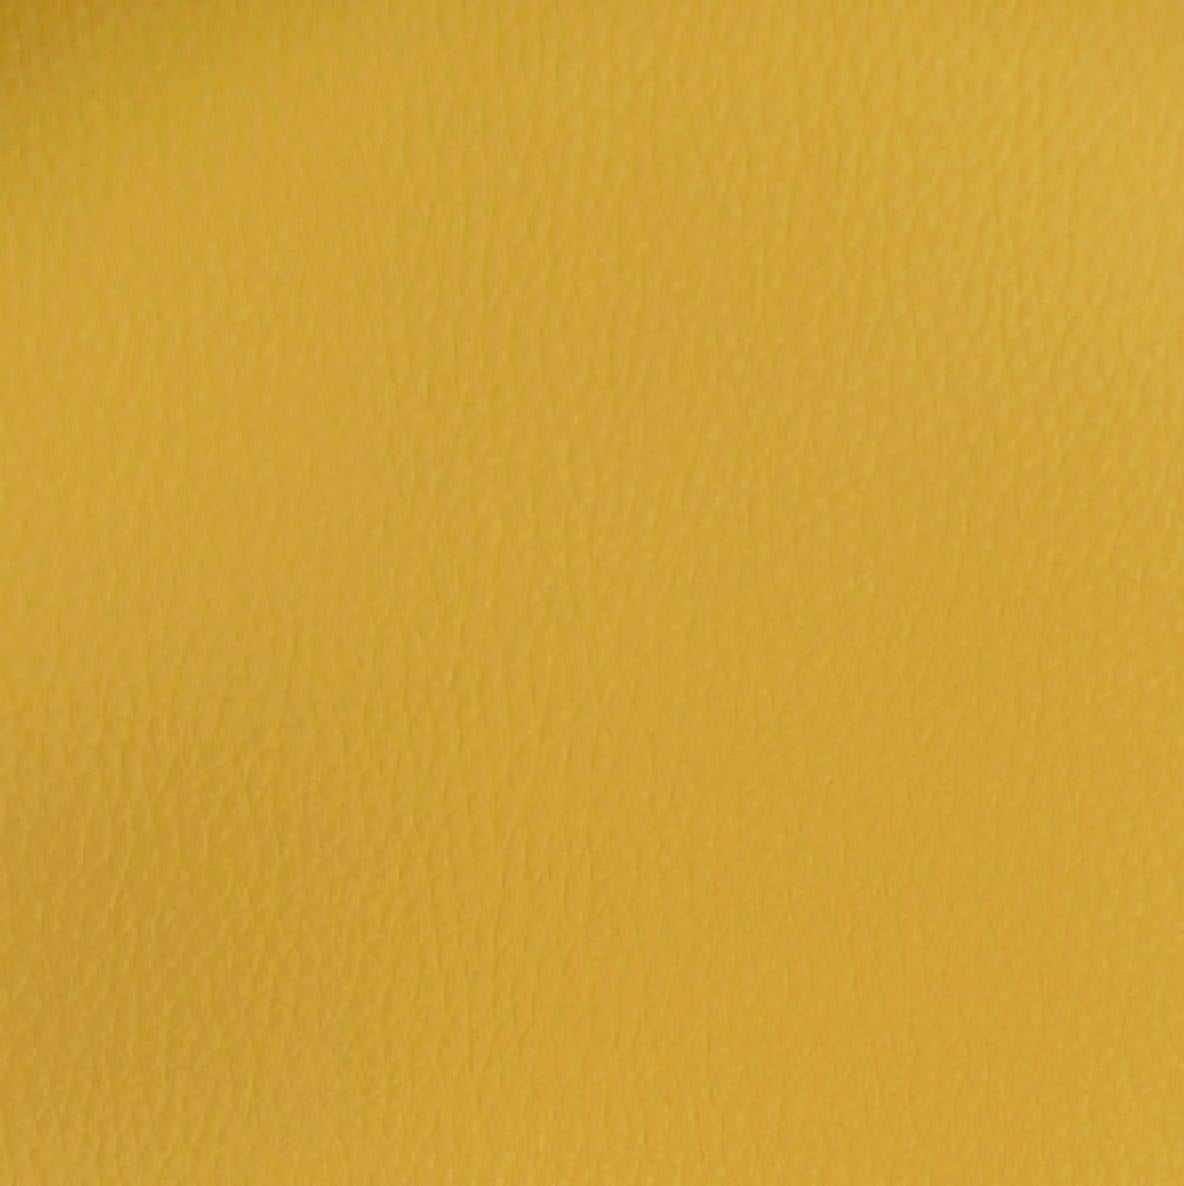 Tela al corte tapicería imitación piel lama mustard (mostaza) ancho 140 cm